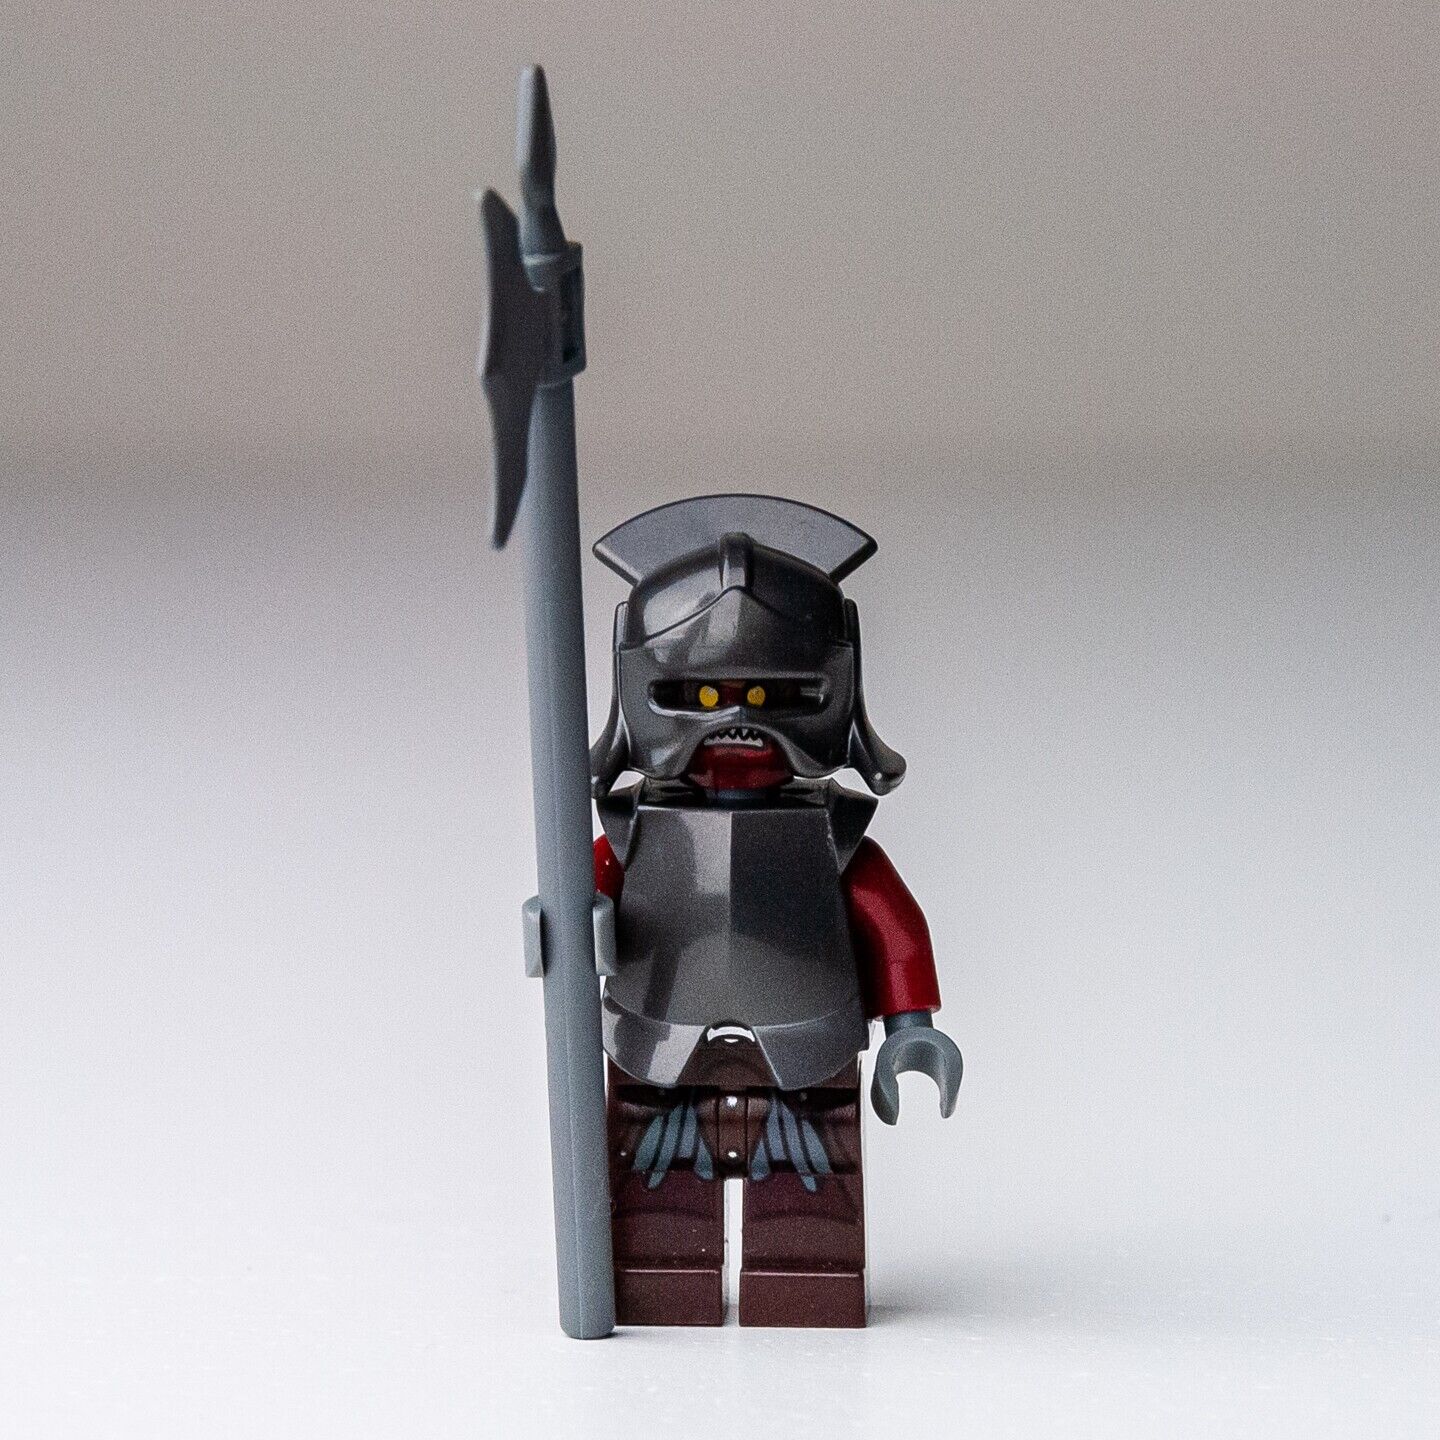 Lego LOTR Hobbit Minifigure - Uruk-hai (lor008) w/ Armor & Halberd